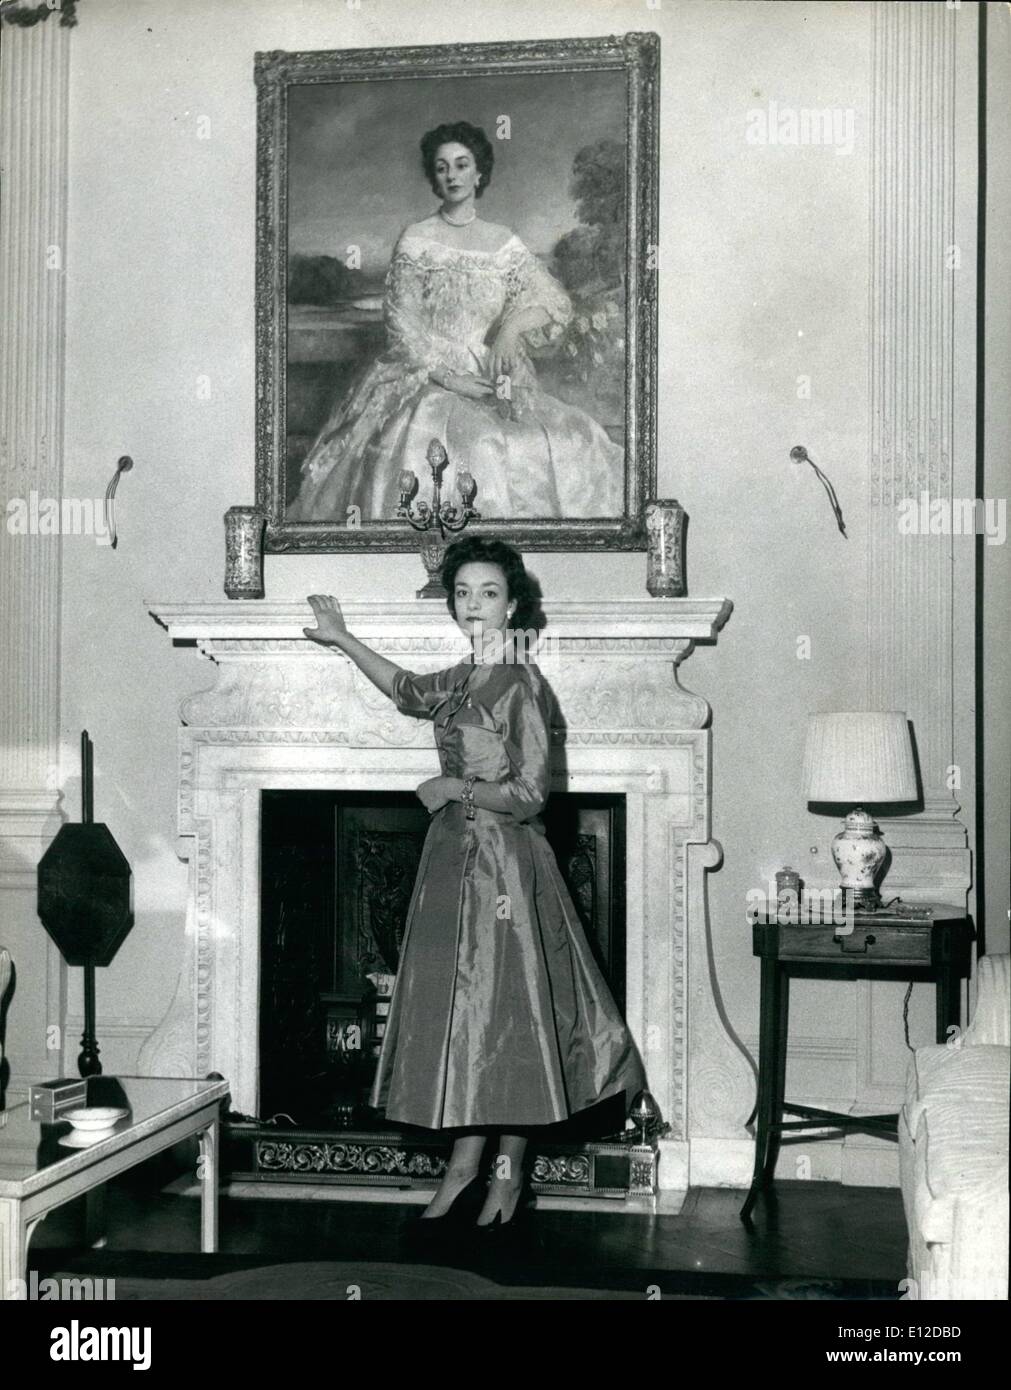 19 déc., 2011 - Baillie-Hamilton Lady Mary photographié dans le salon de sa maison à Tite Street, Chelsea. Sur la cheminée est un portrait si sa mère, la Comtesse de Haddington. Elle assistera à la reine le jour du couronnement : six belles filles dont l'âge varie de 17 à 83 ont été choisis par la Reine pour être ses filles d'honneur au couronnement de service. La reine Victoria créé le précédent lorsqu'elle a été couronné. Bonnes de l'honneur au lieu de l'habituel Pages préparé son train. Les filles sont formés par Marie, duchesse de Devonshire, maîtresse de la Robe de la Reine Banque D'Images